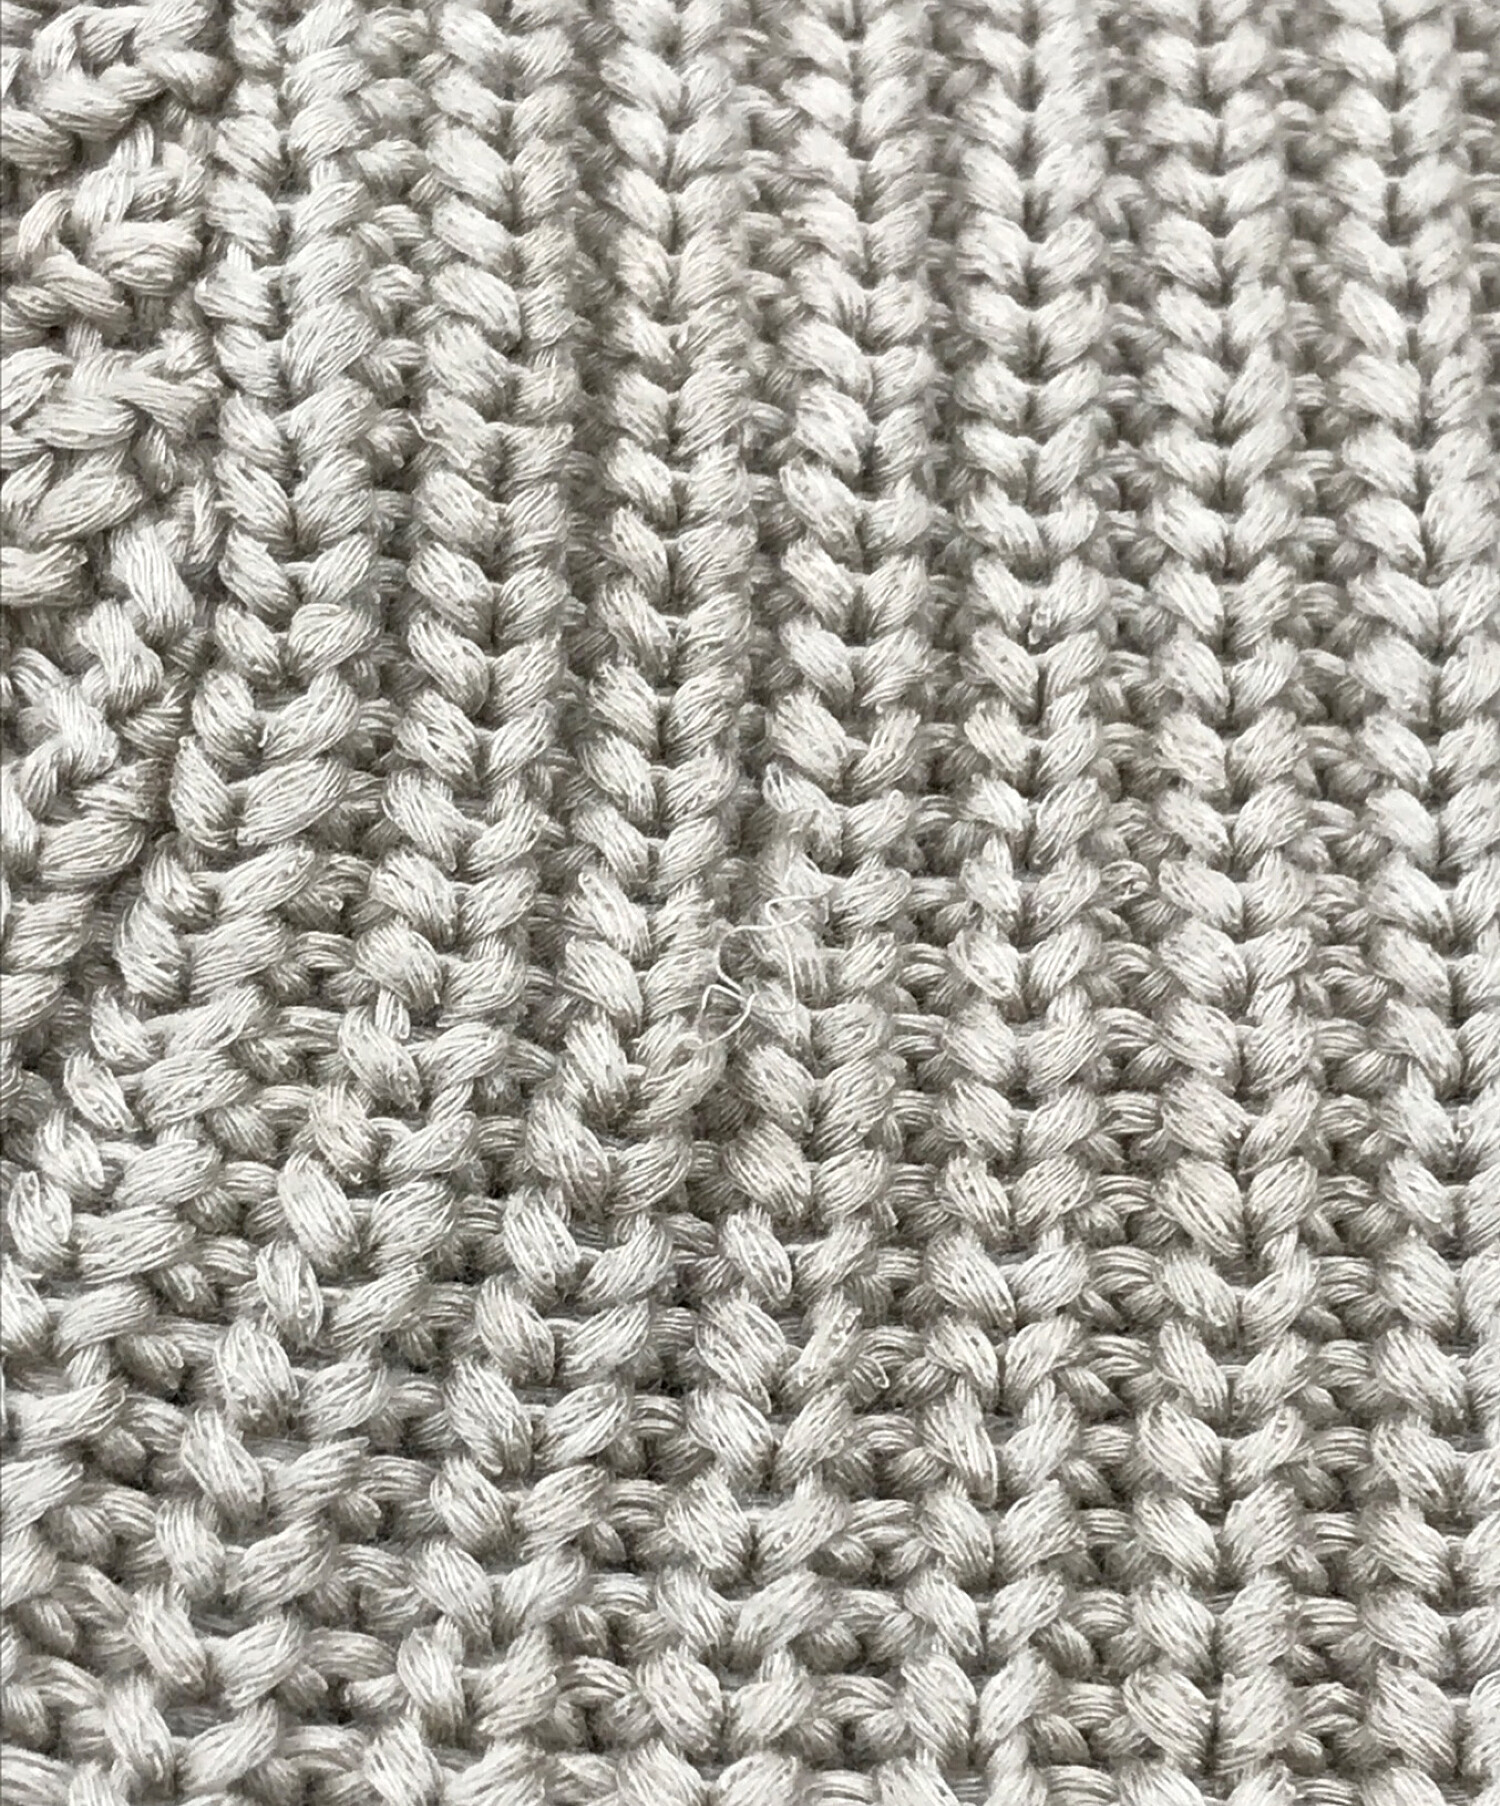 中古・古着通販】SUPREME (シュプリーム) Small Box Ribbed Sweater